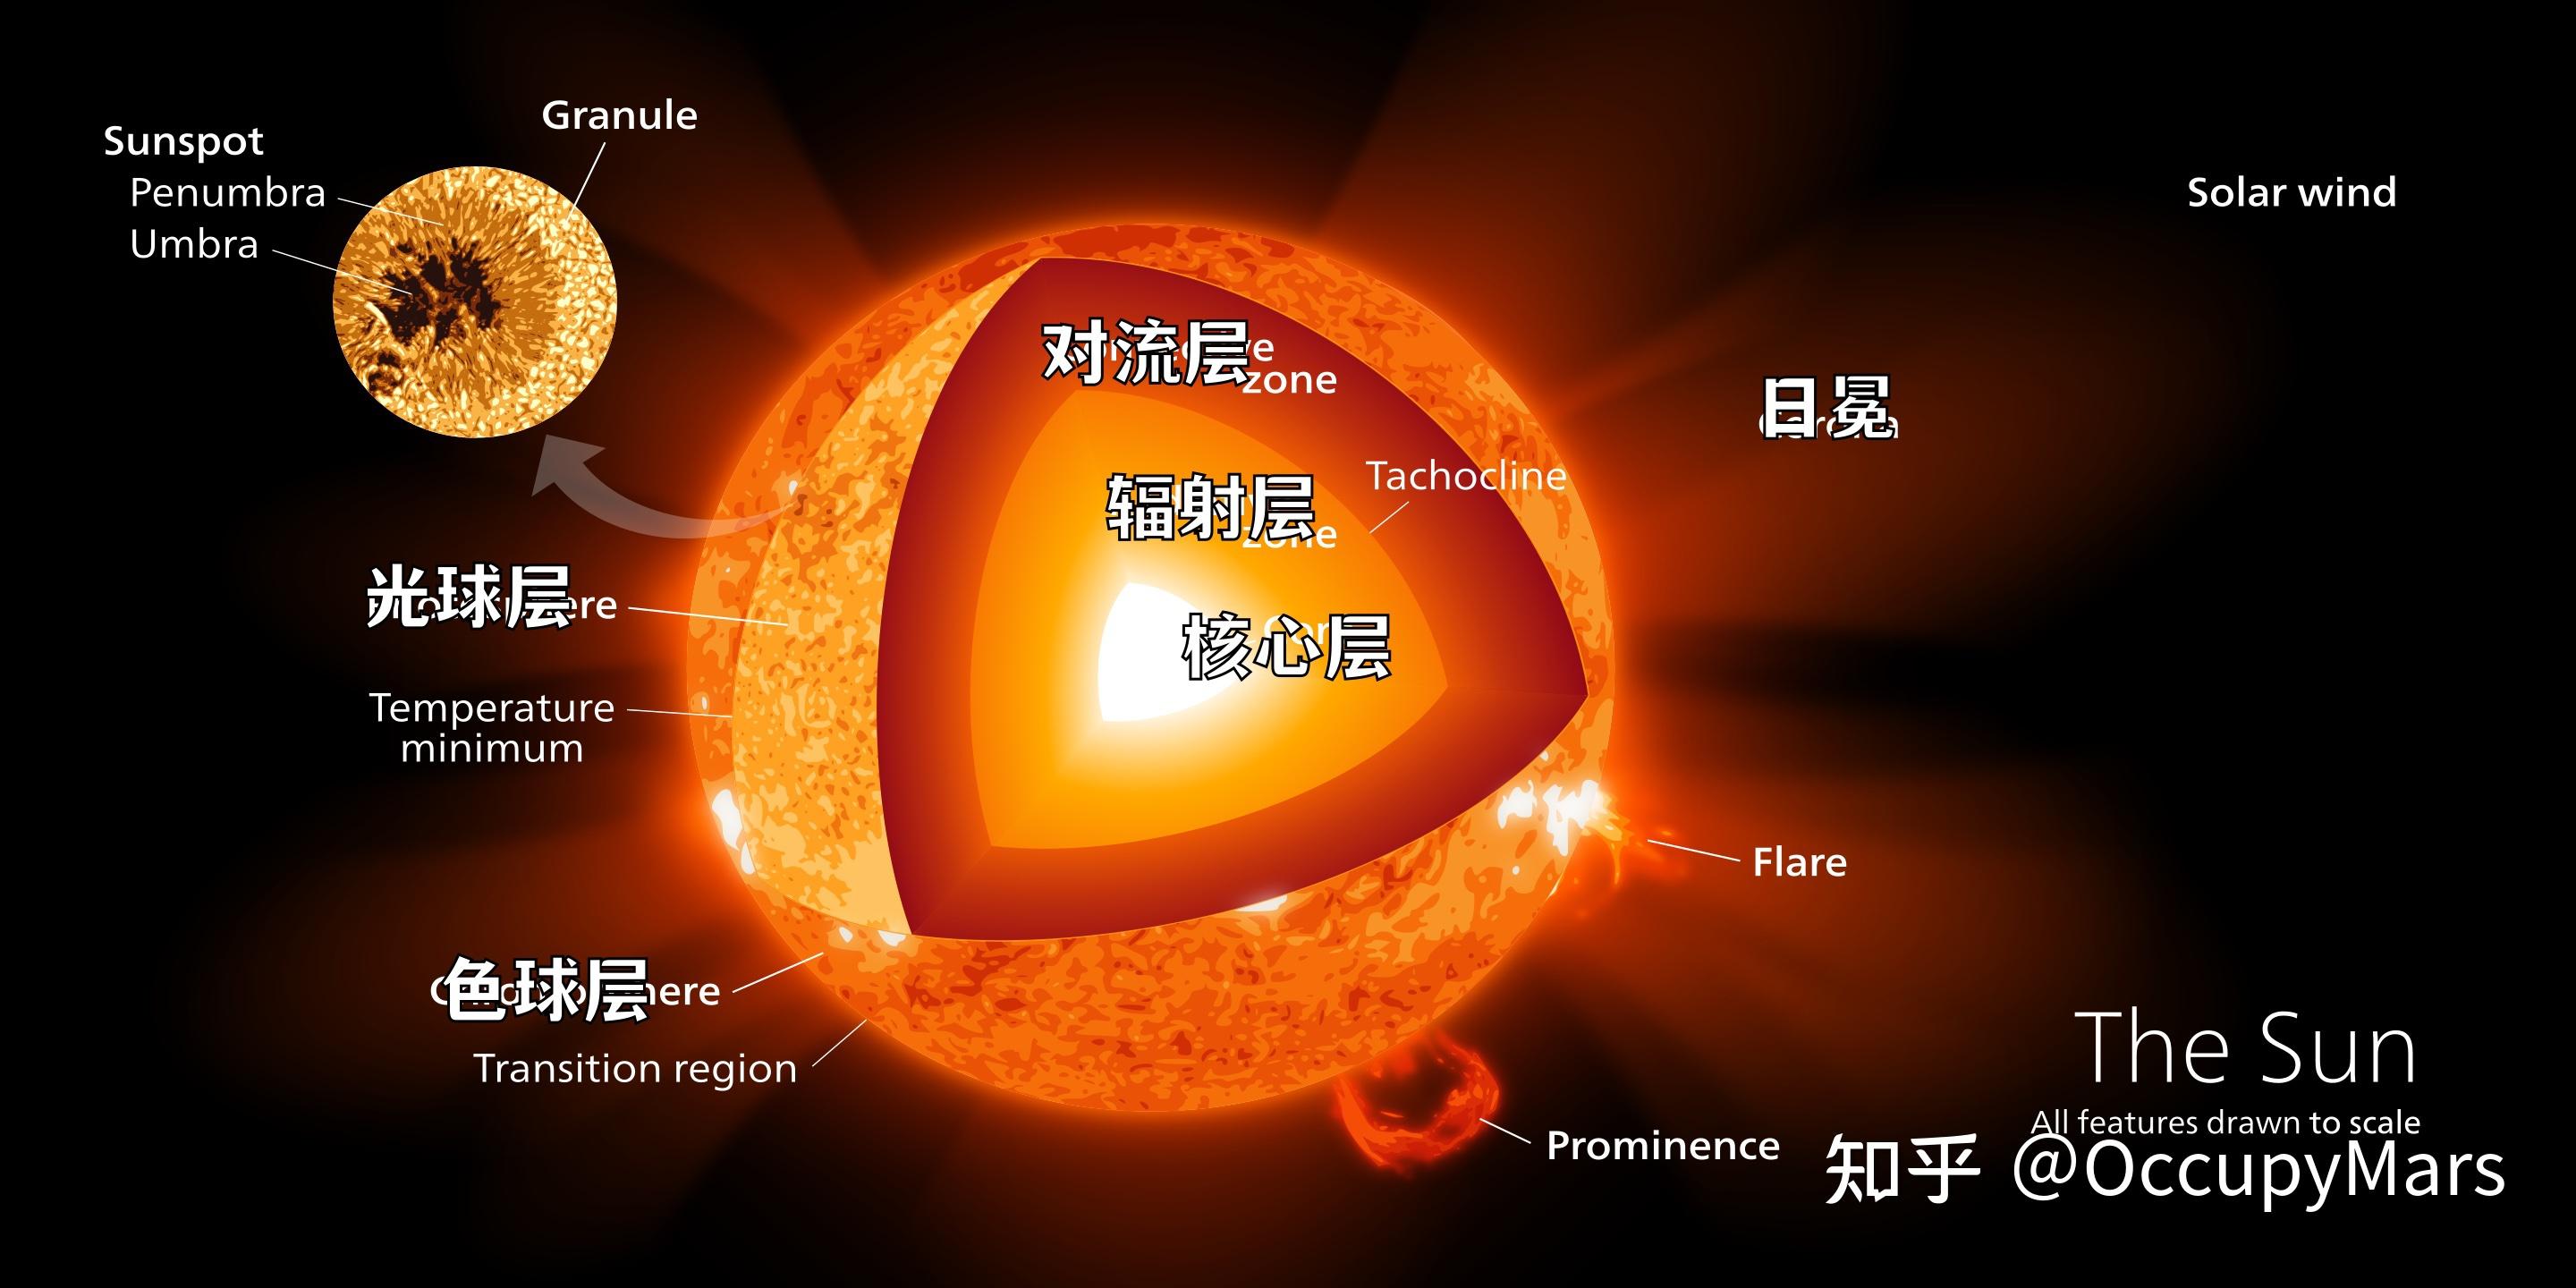 太阳结构简图图片